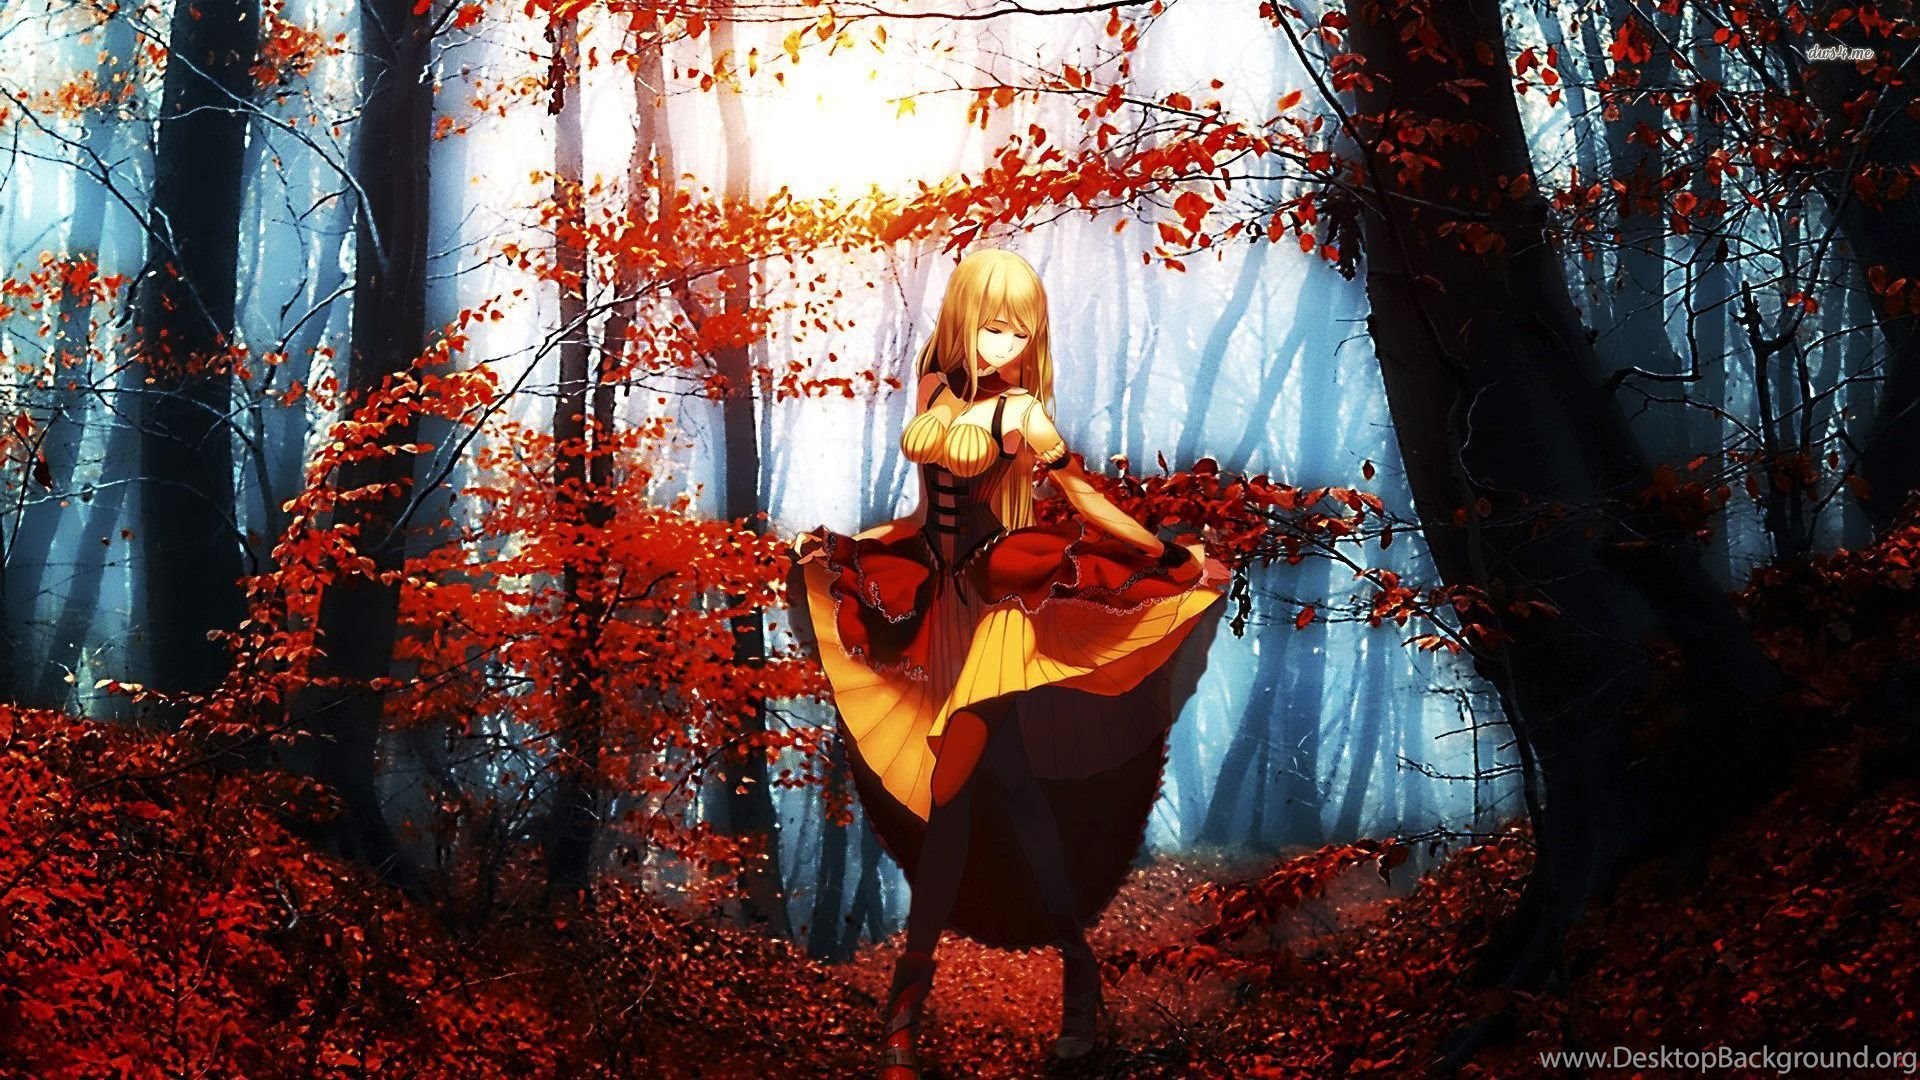 Girl In The Autumn Forest Wallpaper Anime Wallpaper Desktop Background